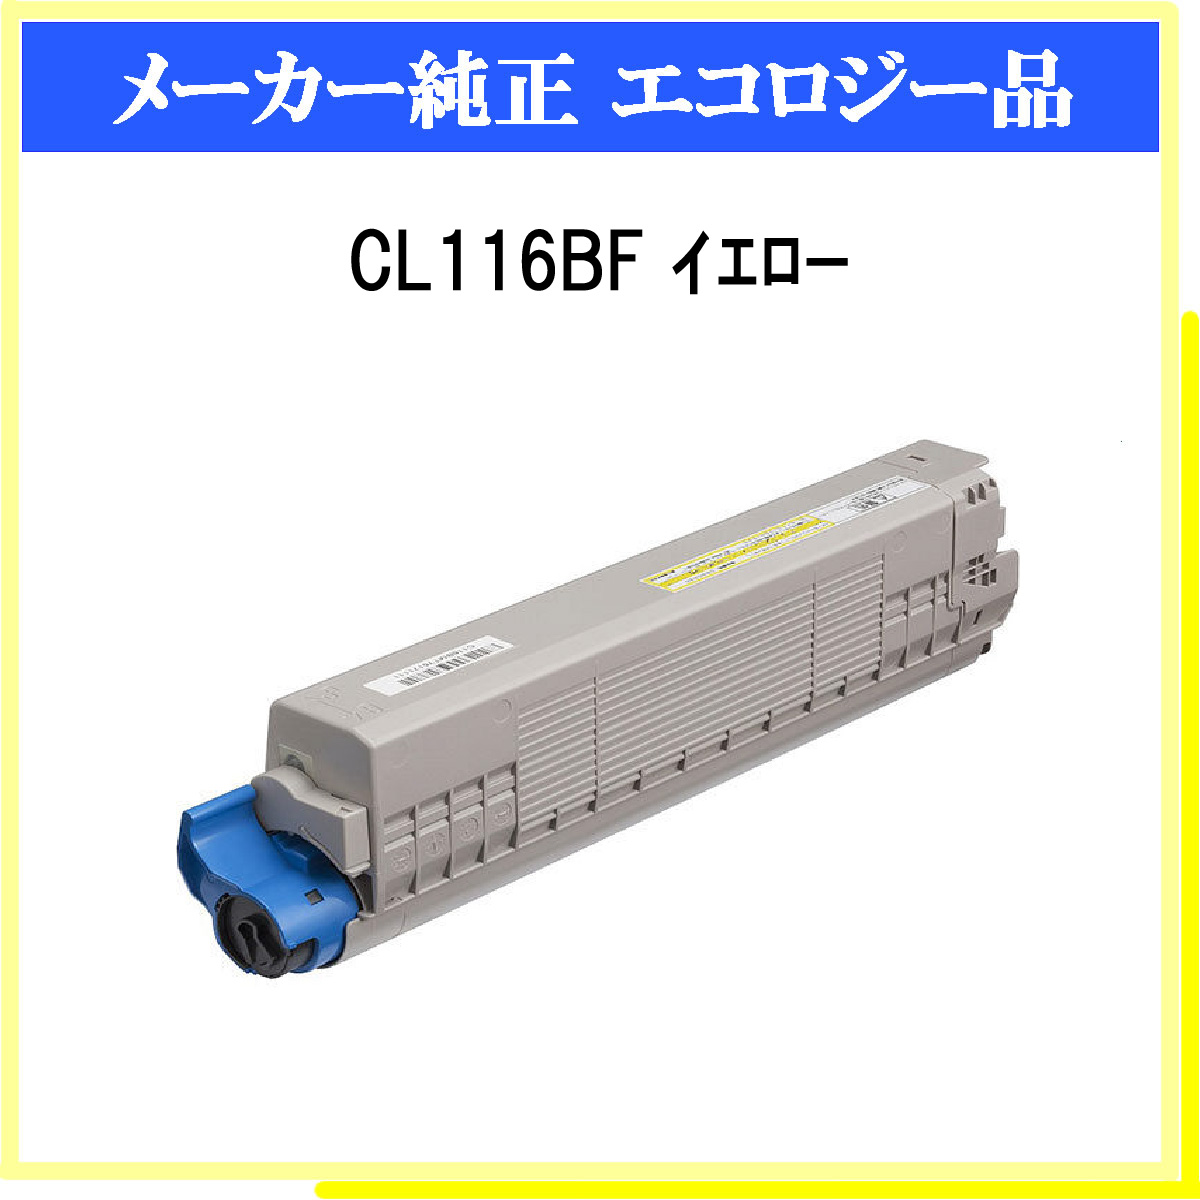 CL116BF ｲｴﾛｰ 環境共生ﾄﾅｰ - ウインドウを閉じる